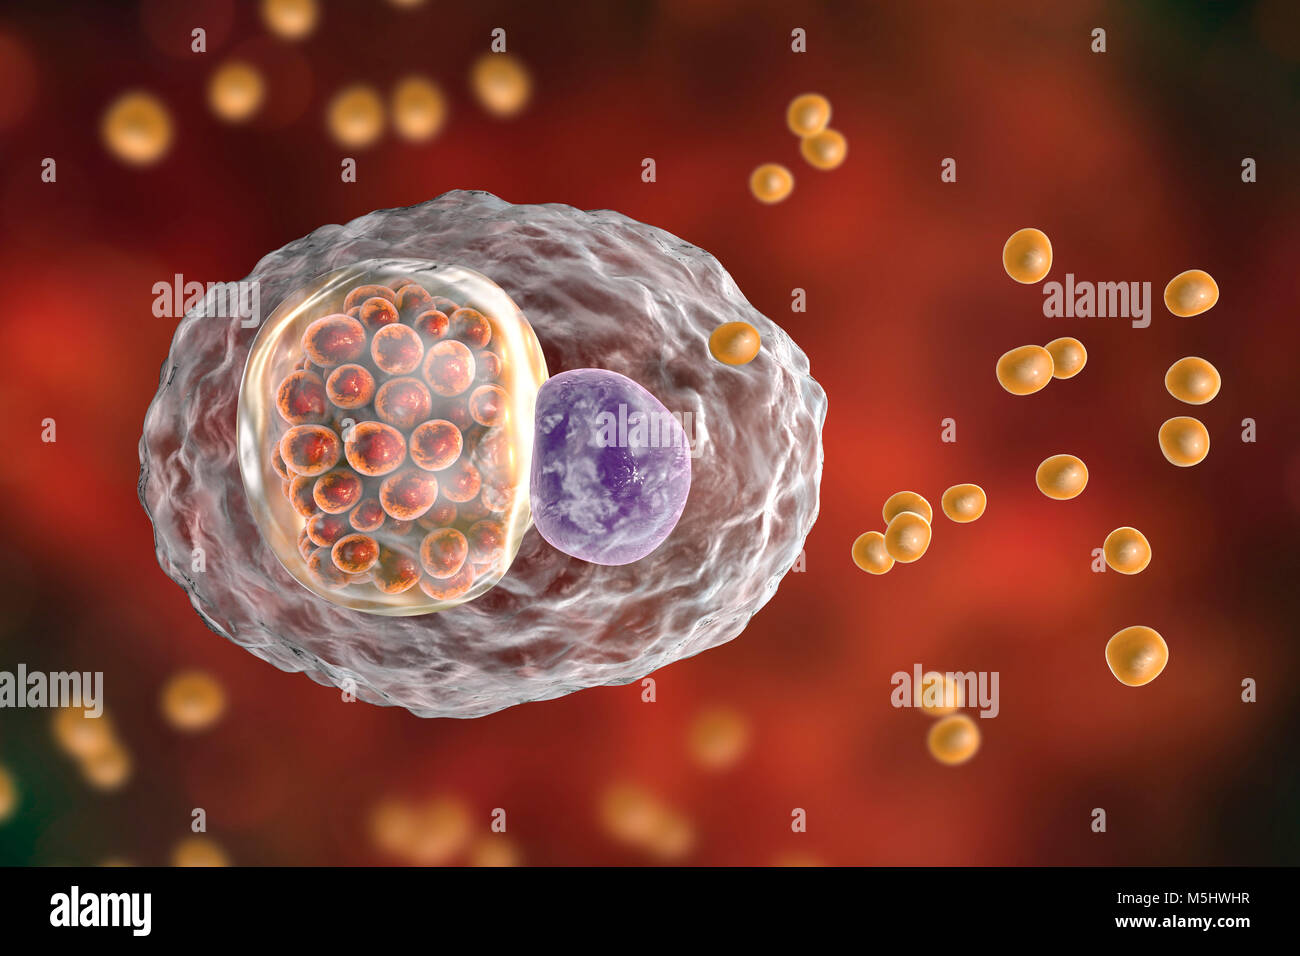 Chlamydia psittaci batteri. Computer illustrazione che mostra due stadi del ciclo di vita di Chlamydia: corpi elementari (non extracellulare moltiplicando in fase infettiva, piccole sfere di colore arancione al di fuori della cella) e un composto di inclusione di un gruppo di chlamydia reticolano corpi (intracellulare dello stadio di moltiplicazione, arancioni piccole sfere all'interno del cel) nelle vicinanze del nucleo (viola) di una cellula. Le specie di Chlamydia sono batteri atipici per il fatto che essi sono obbligherà parassiti intracellulari, di vivere e di riprodurre soltanto all'interno delle cellule. Questa specie fa sì che l'aborto negli animali e nei polmoni della malattia negli esseri umani. Foto Stock